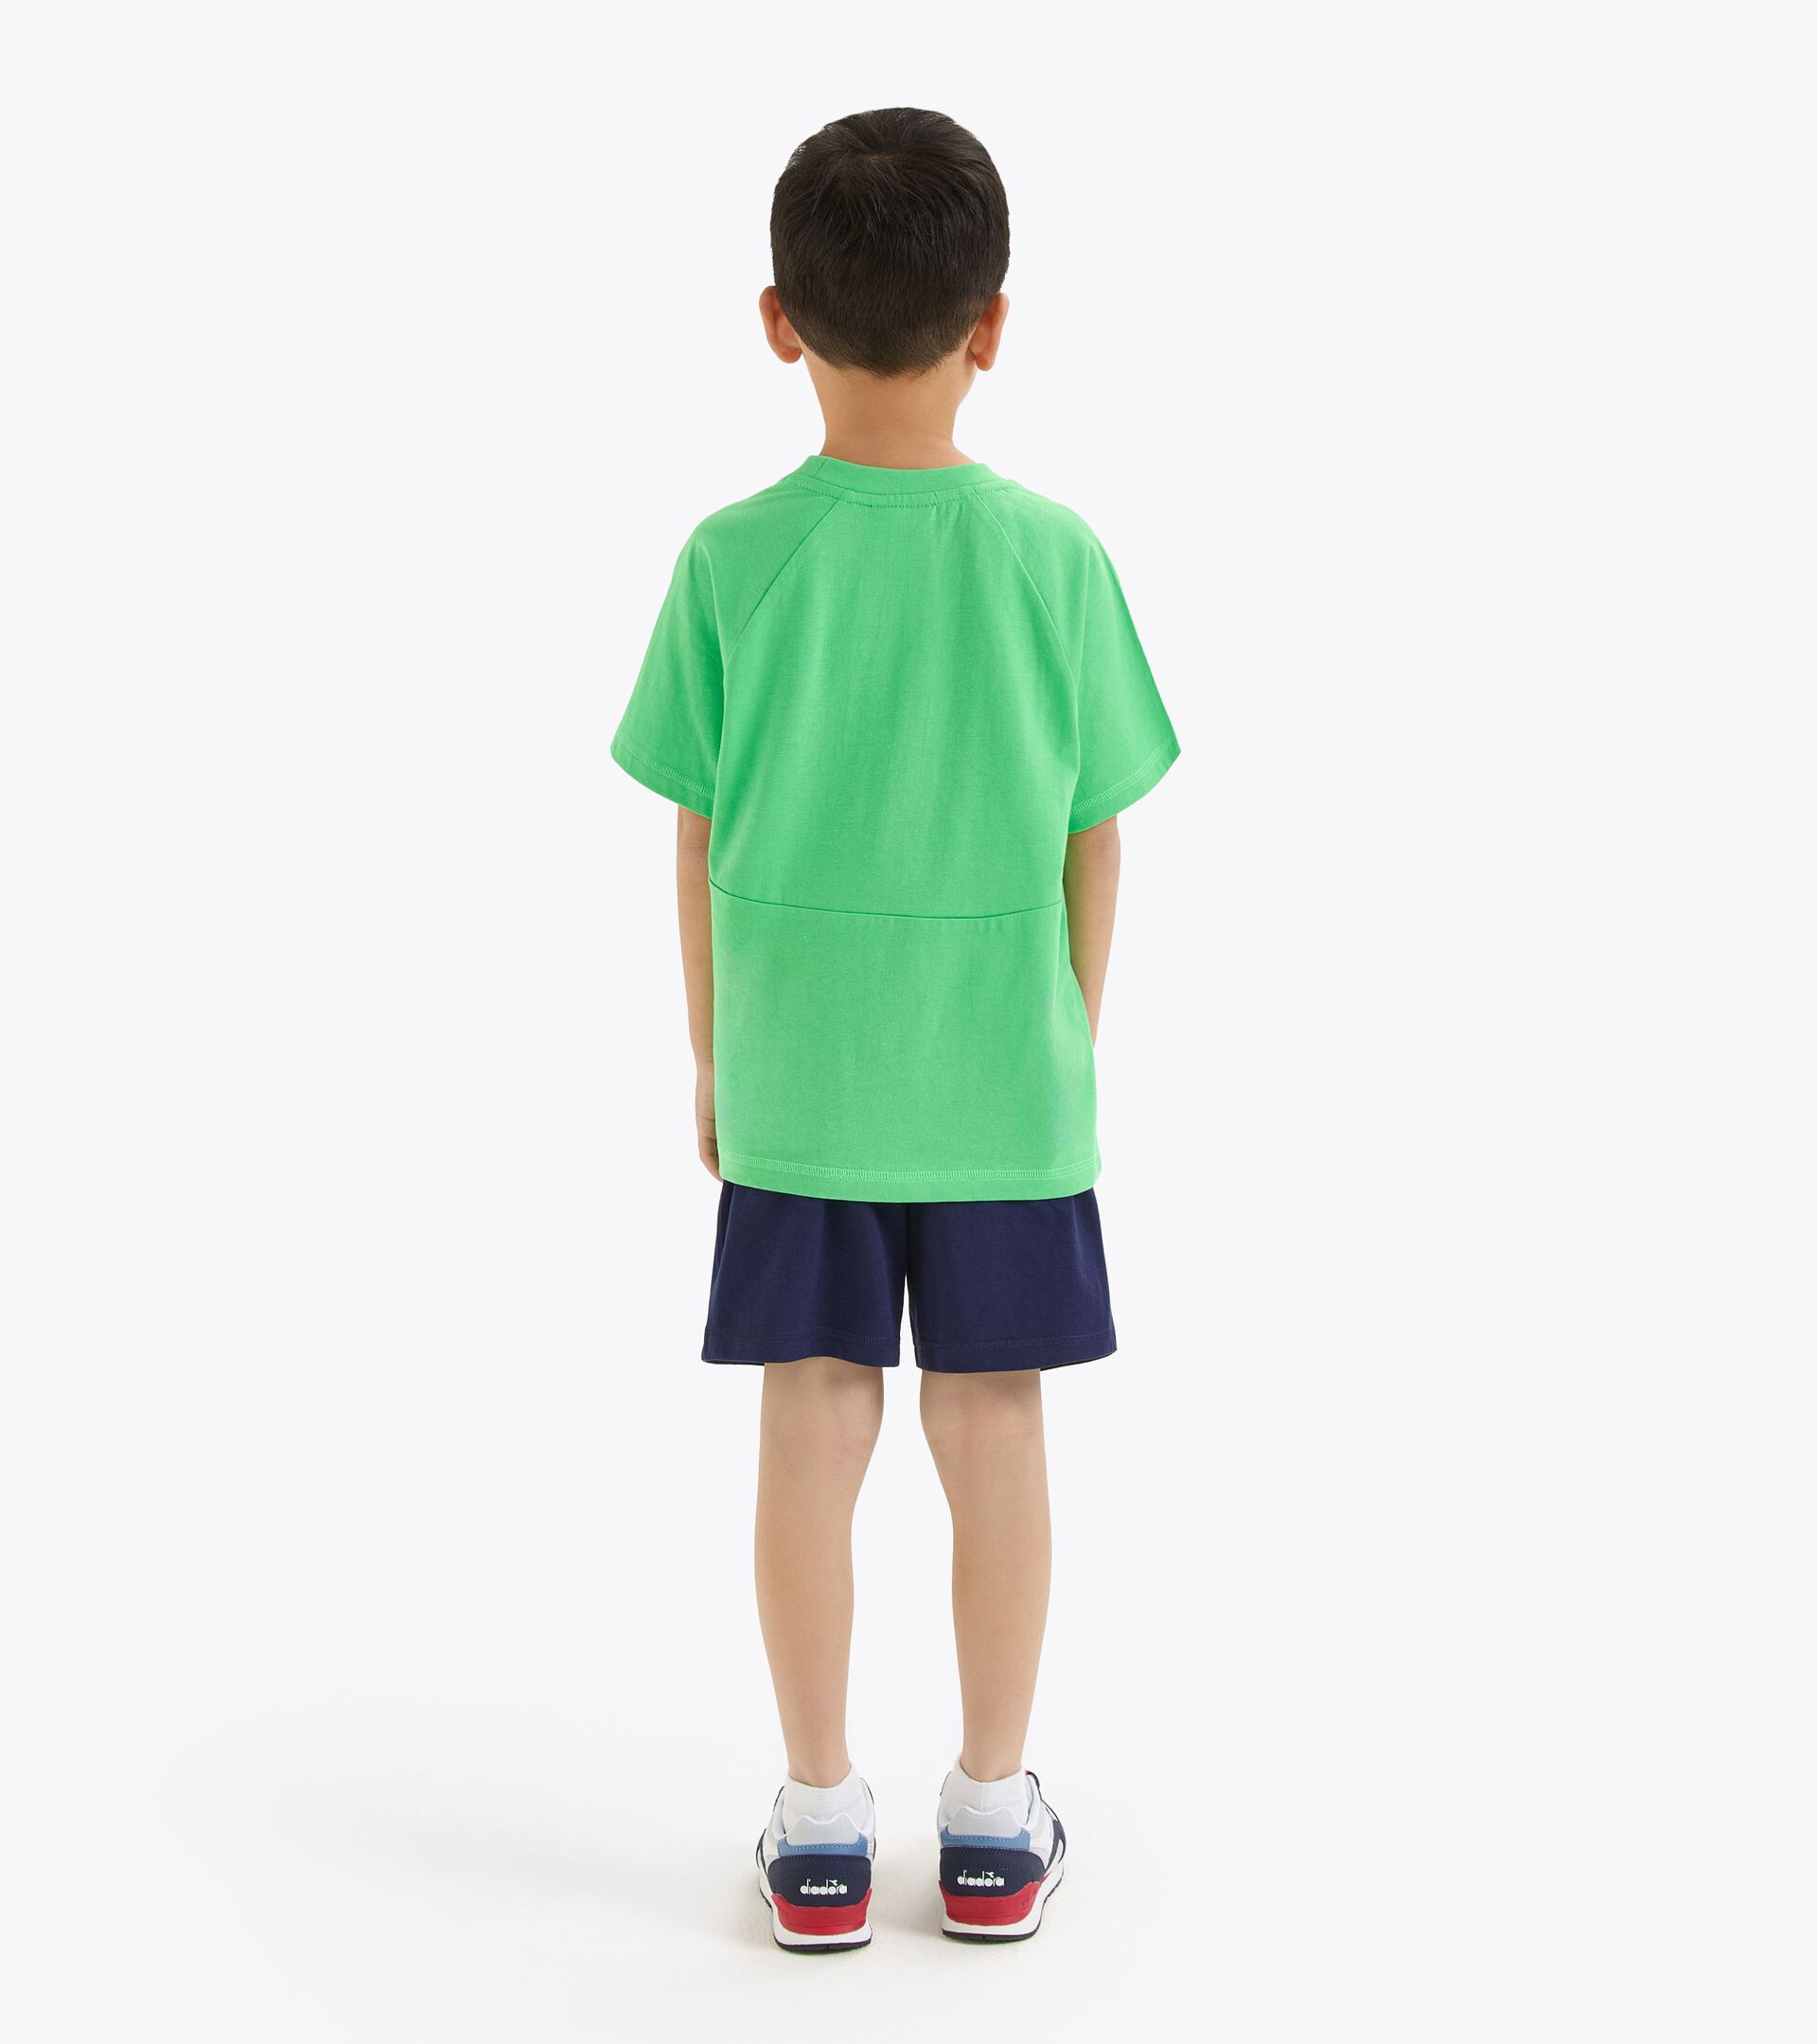 Conjunto deportivo - Camiseta y pantalones cortos - Niños y adolescentes
 JB. SET SS RIDDLE VERDE VENENO - Diadora